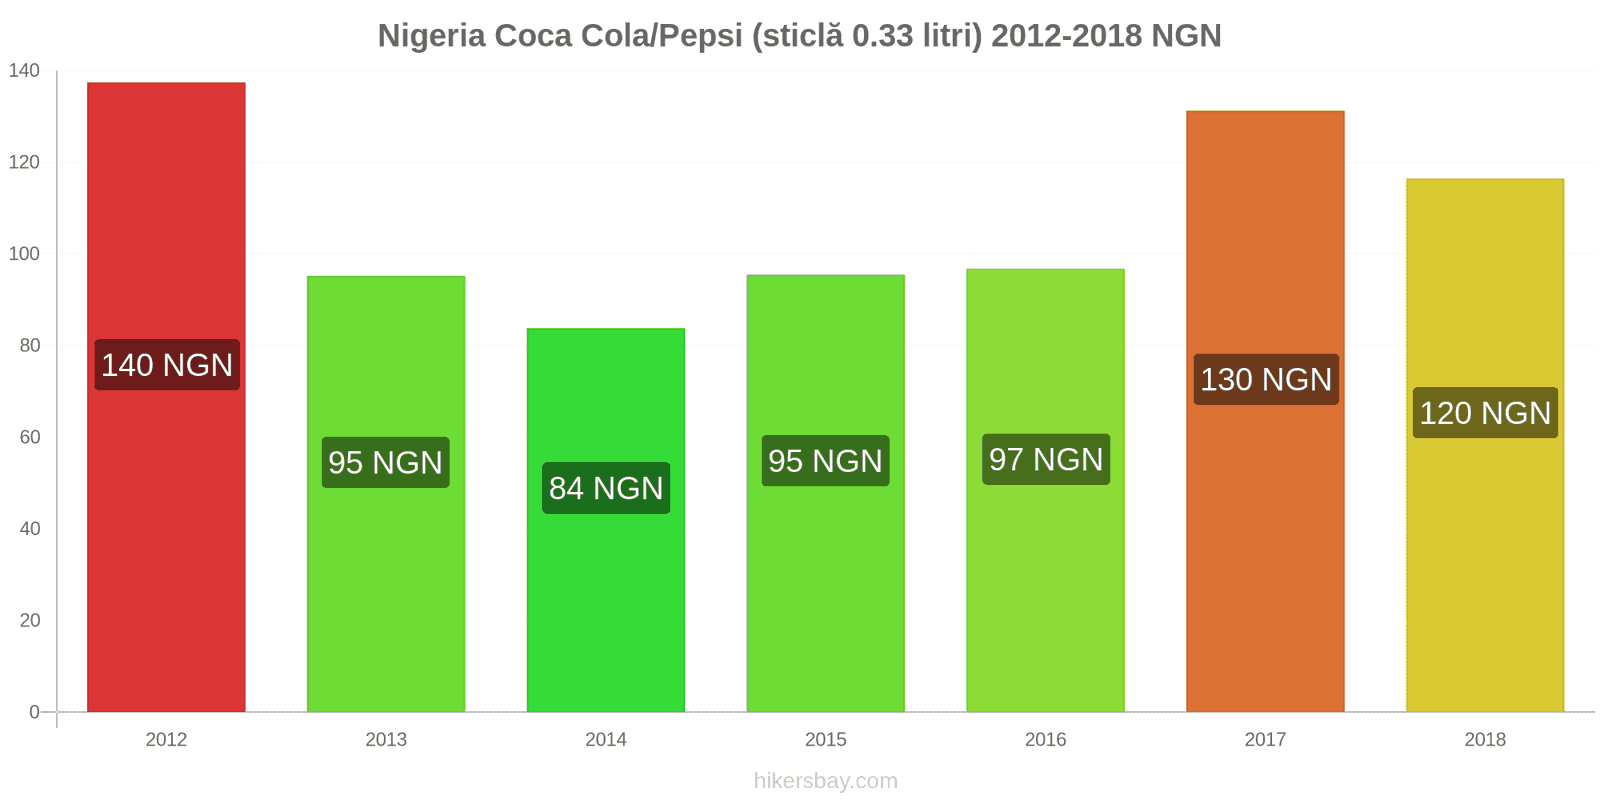 Nigeria schimbări de prețuri Coca-Cola/Pepsi (sticlă de 0.33 litri) hikersbay.com